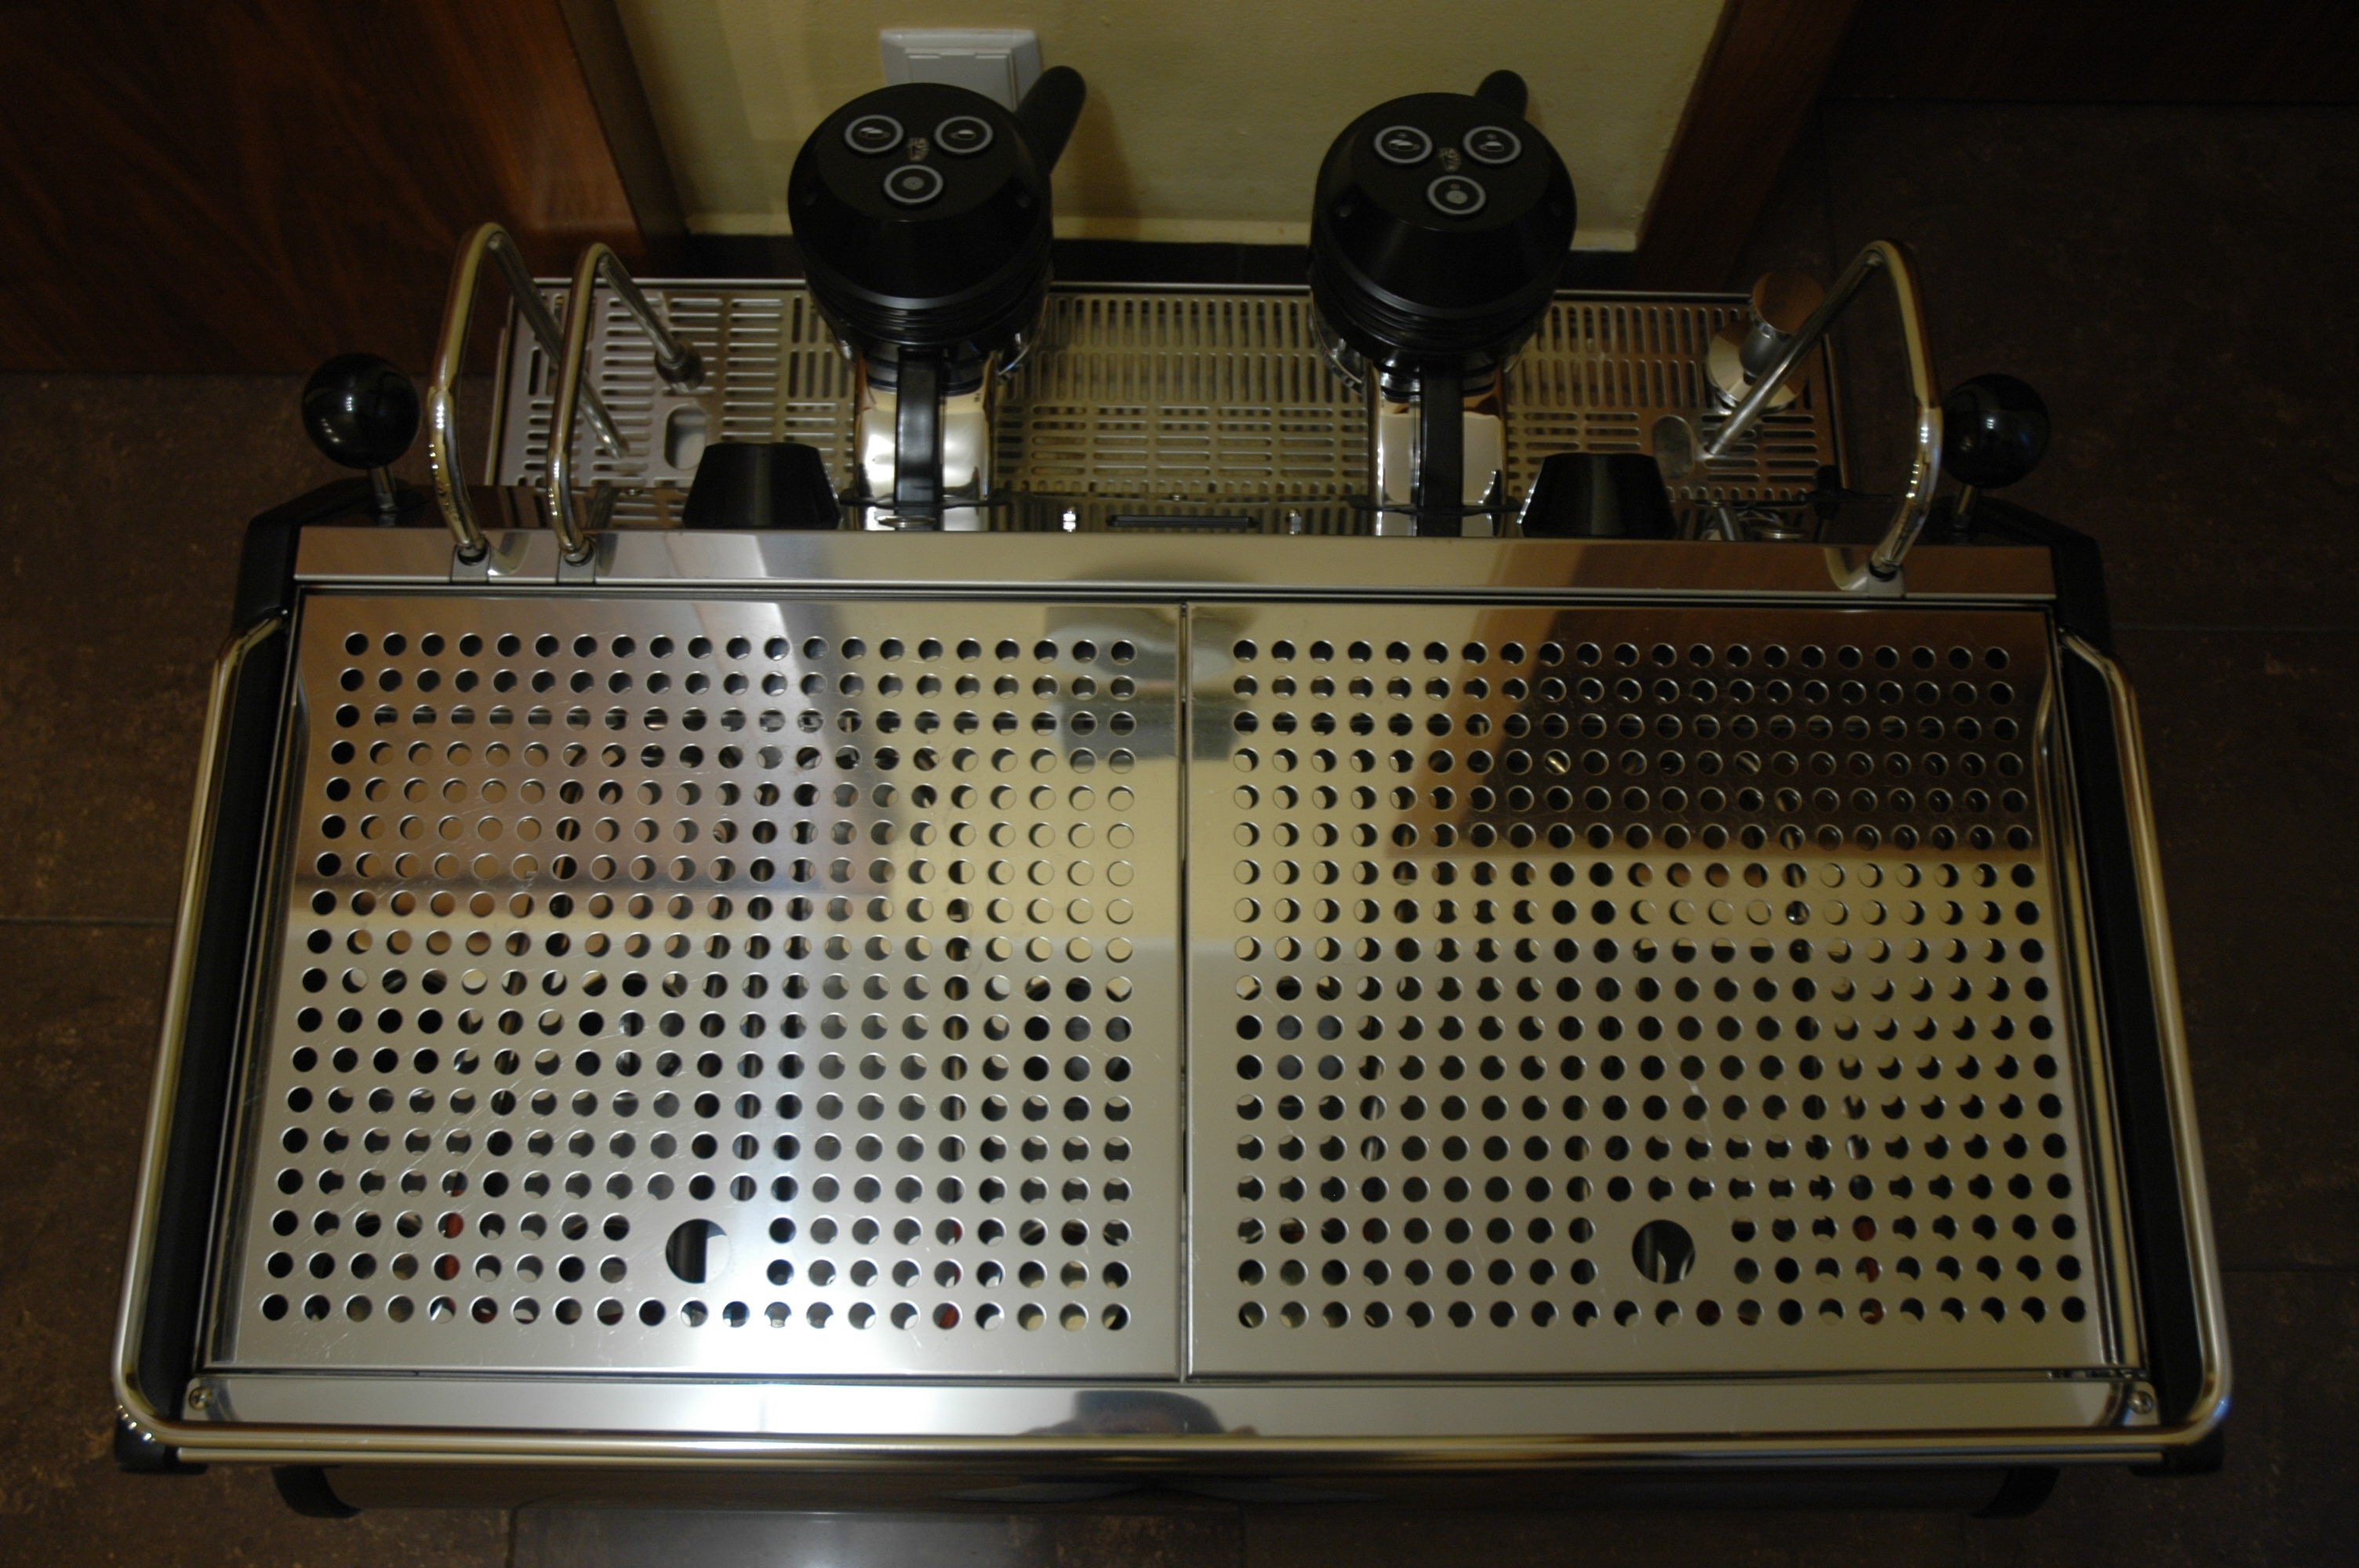 Profesionální kávovar La Marzocco STRADA AV 2g Anniversary 90 - předváděcí veletržní kus, jako nový!!!